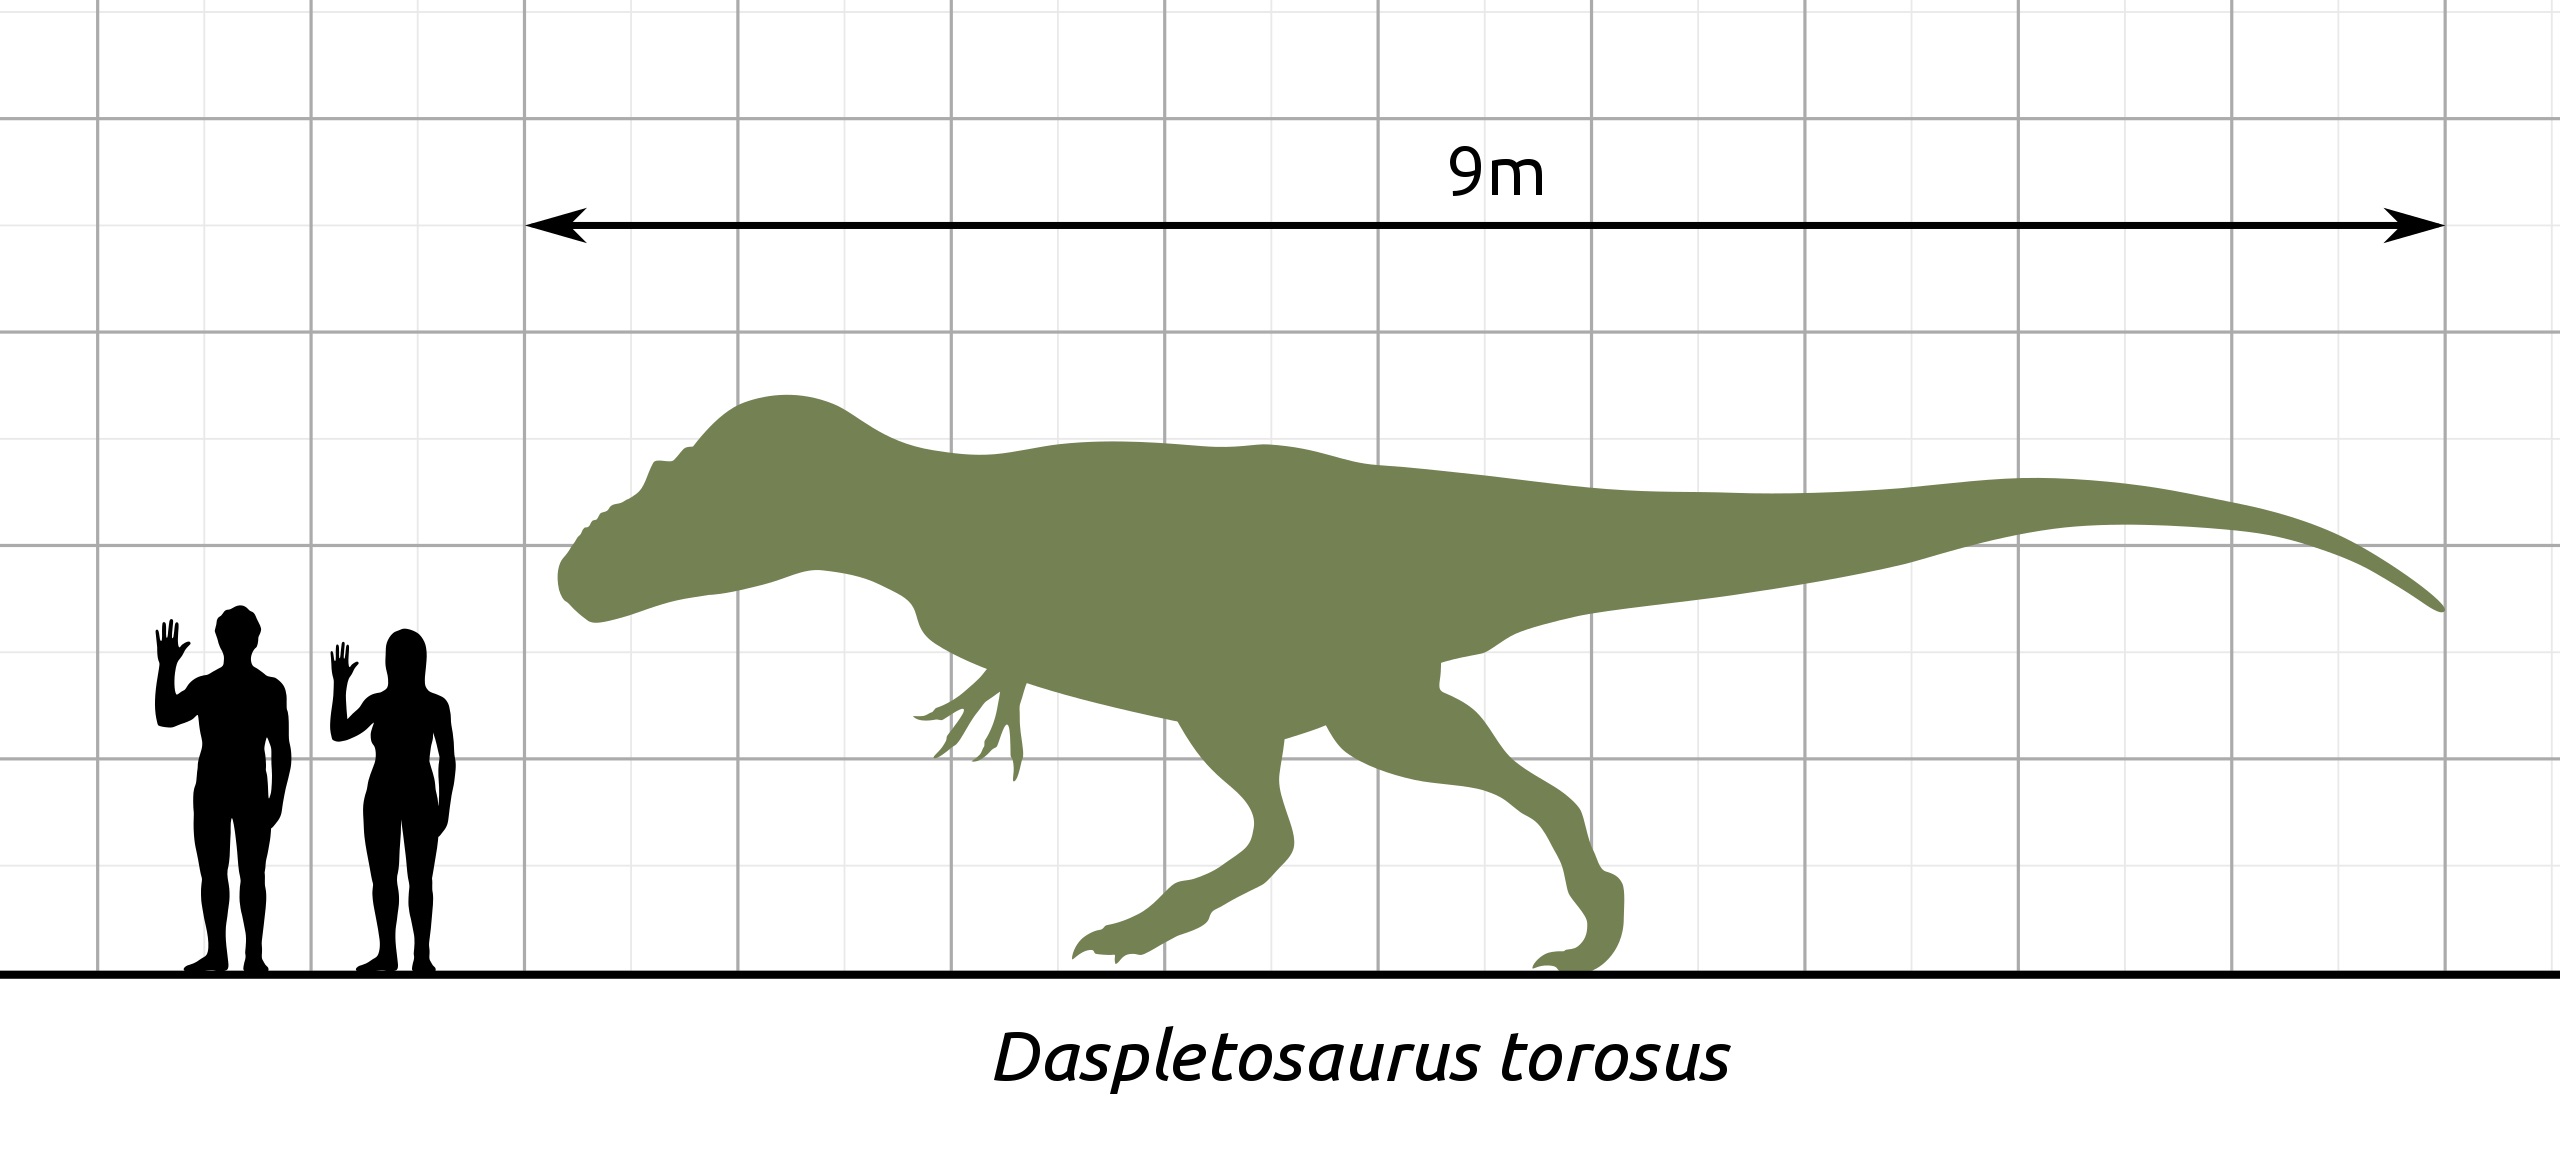 Porovnání velikosti člověka a dospělého jedince tyranosaurida druhu Daspletosaurus torosus. Od vyhynutí neptačích dinosaurů před 66 miliony let už se na suché zemi (mimo sladkovodní ekosystémy osídlené obřími krokodýly) tak velcí predátoři nevyskytov